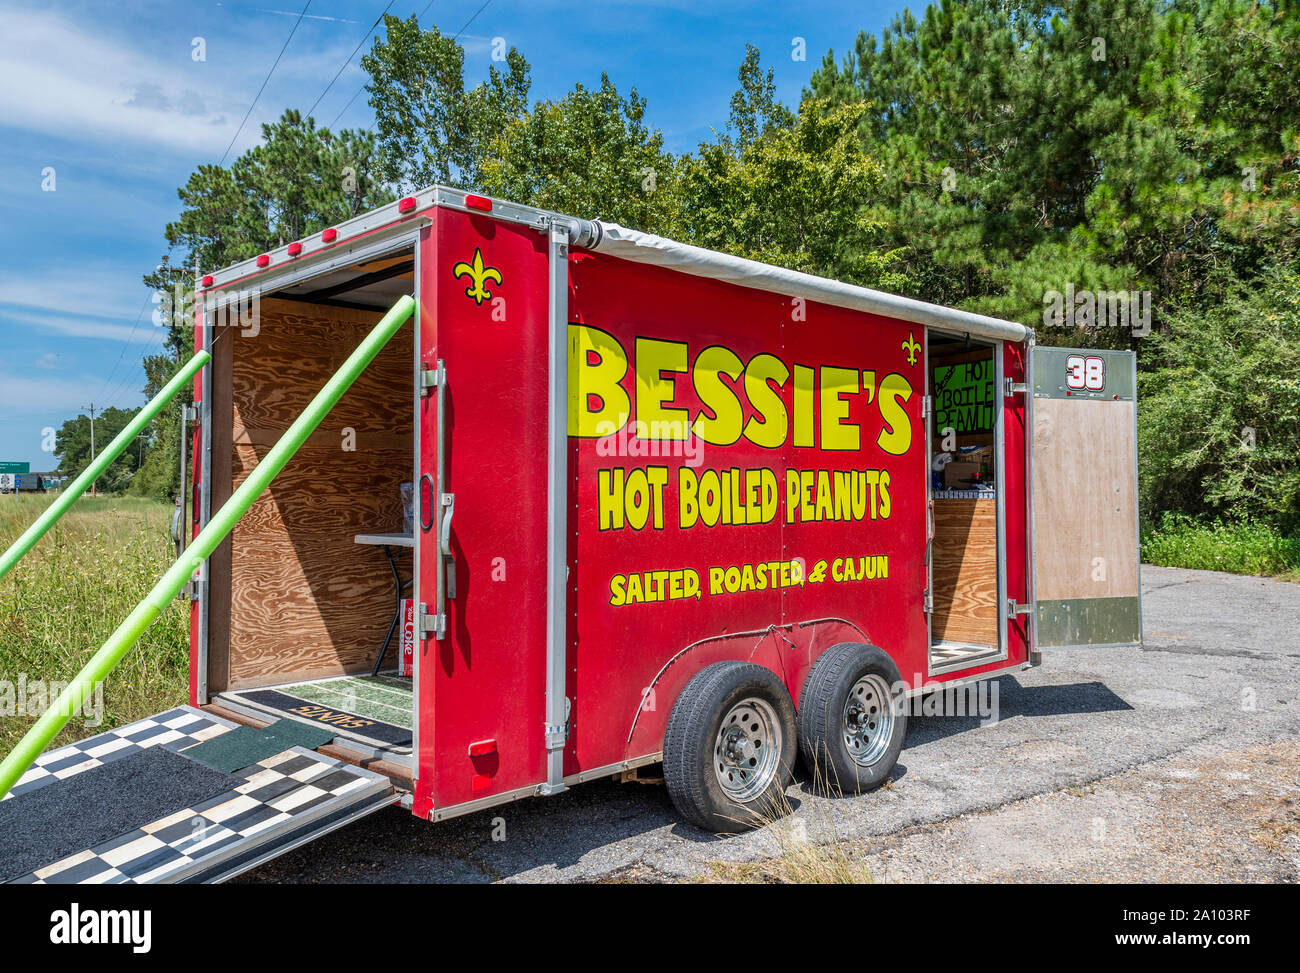 Bessie's hot Cajun camion alimentaire arachides bouillies, éventaire près du Mississippi Bienvenue Centre à la frontière de la Louisiane. Banque D'Images